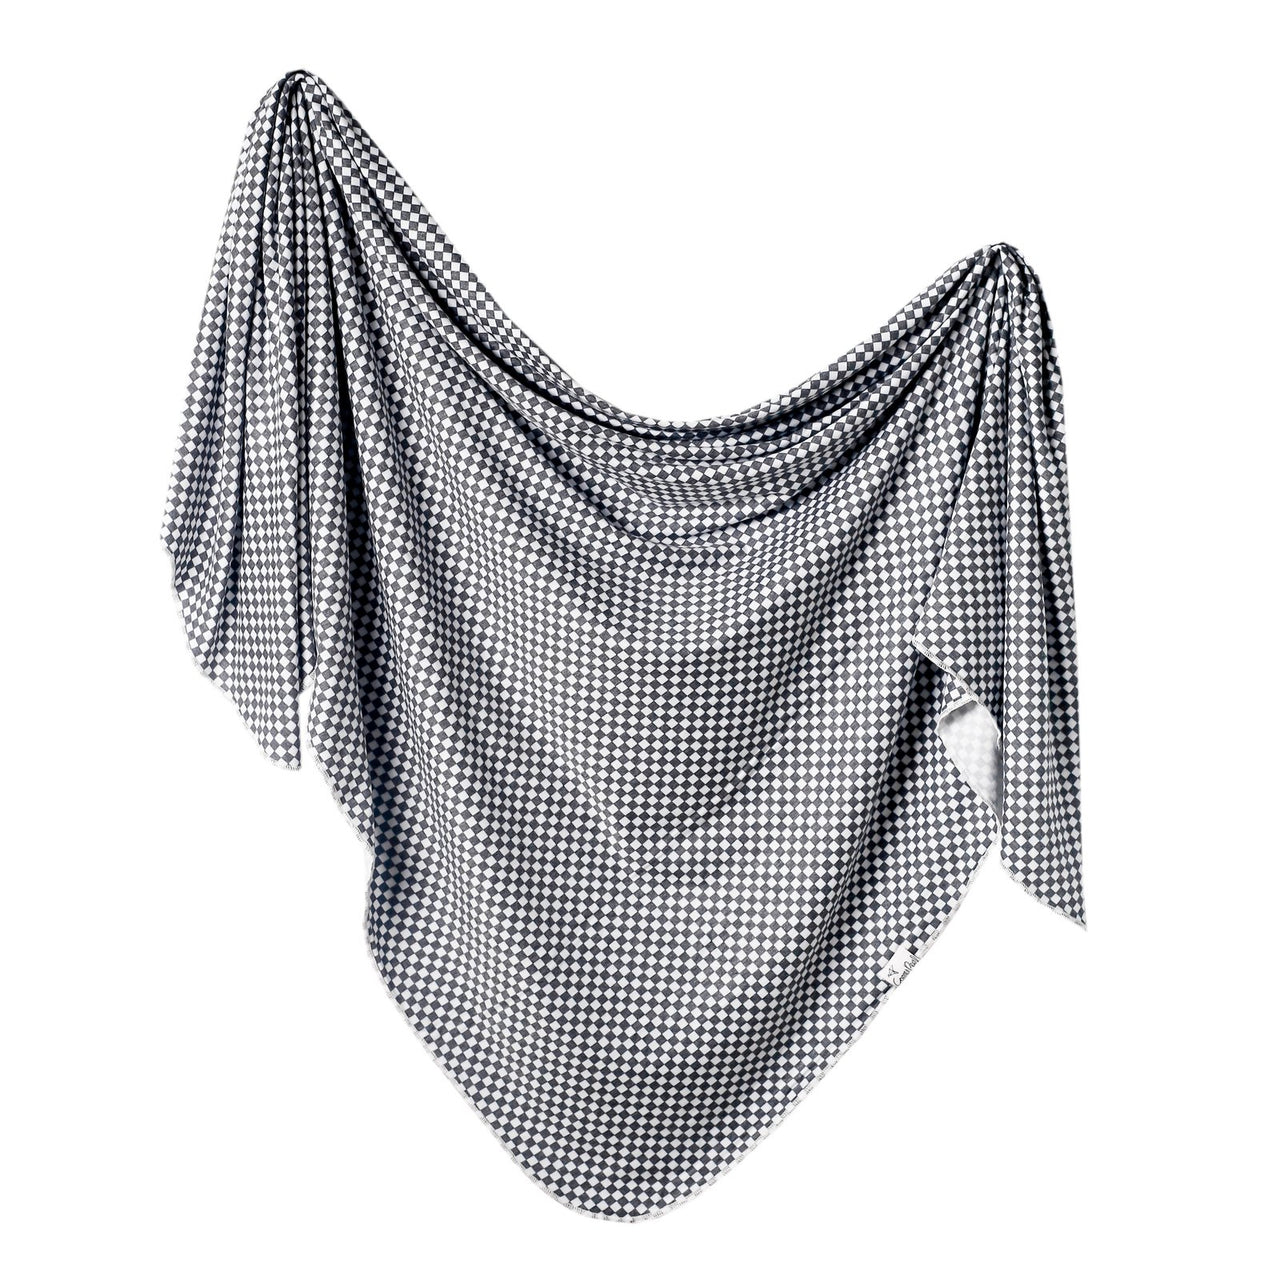 Knit Swaddle Blanket- Nash